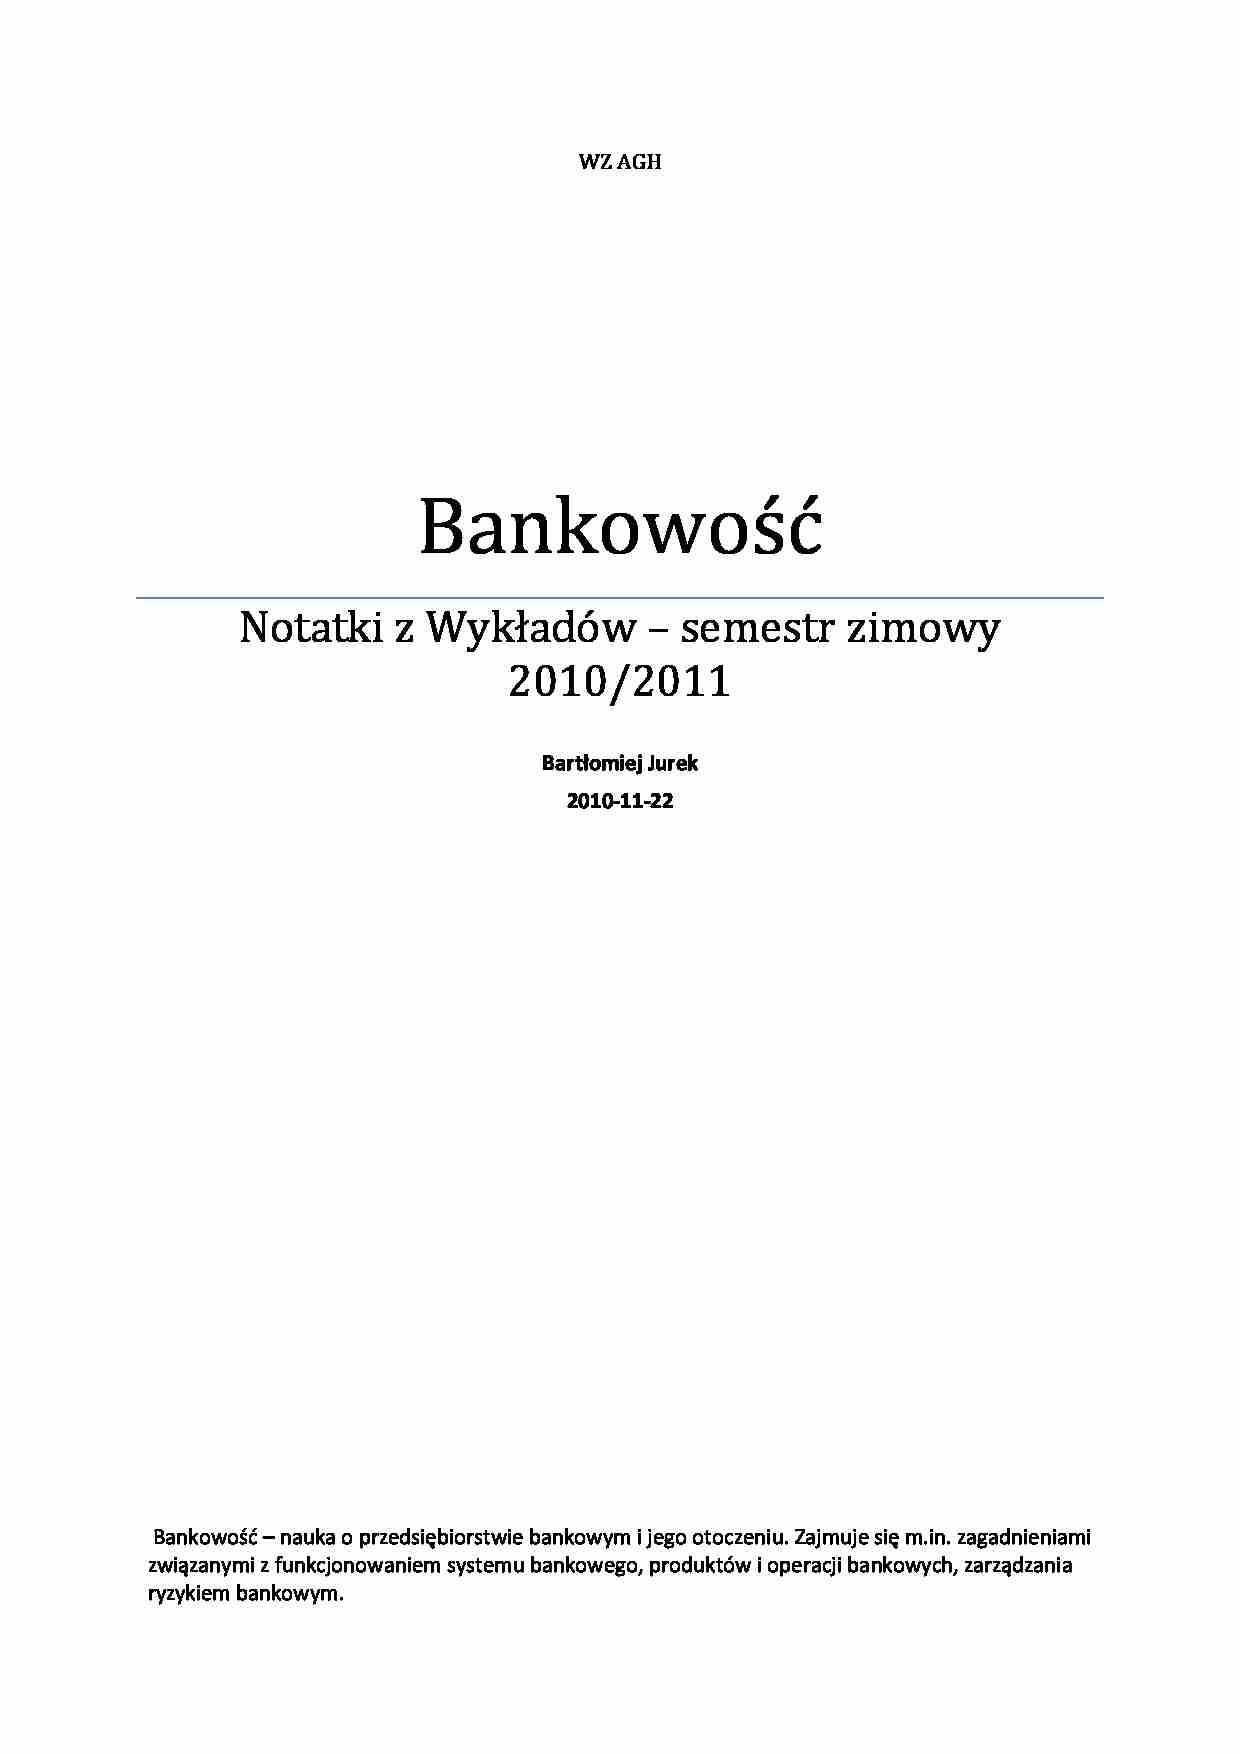 Bankowość - Środek płatniczy - notatki z wykładów - strona 1